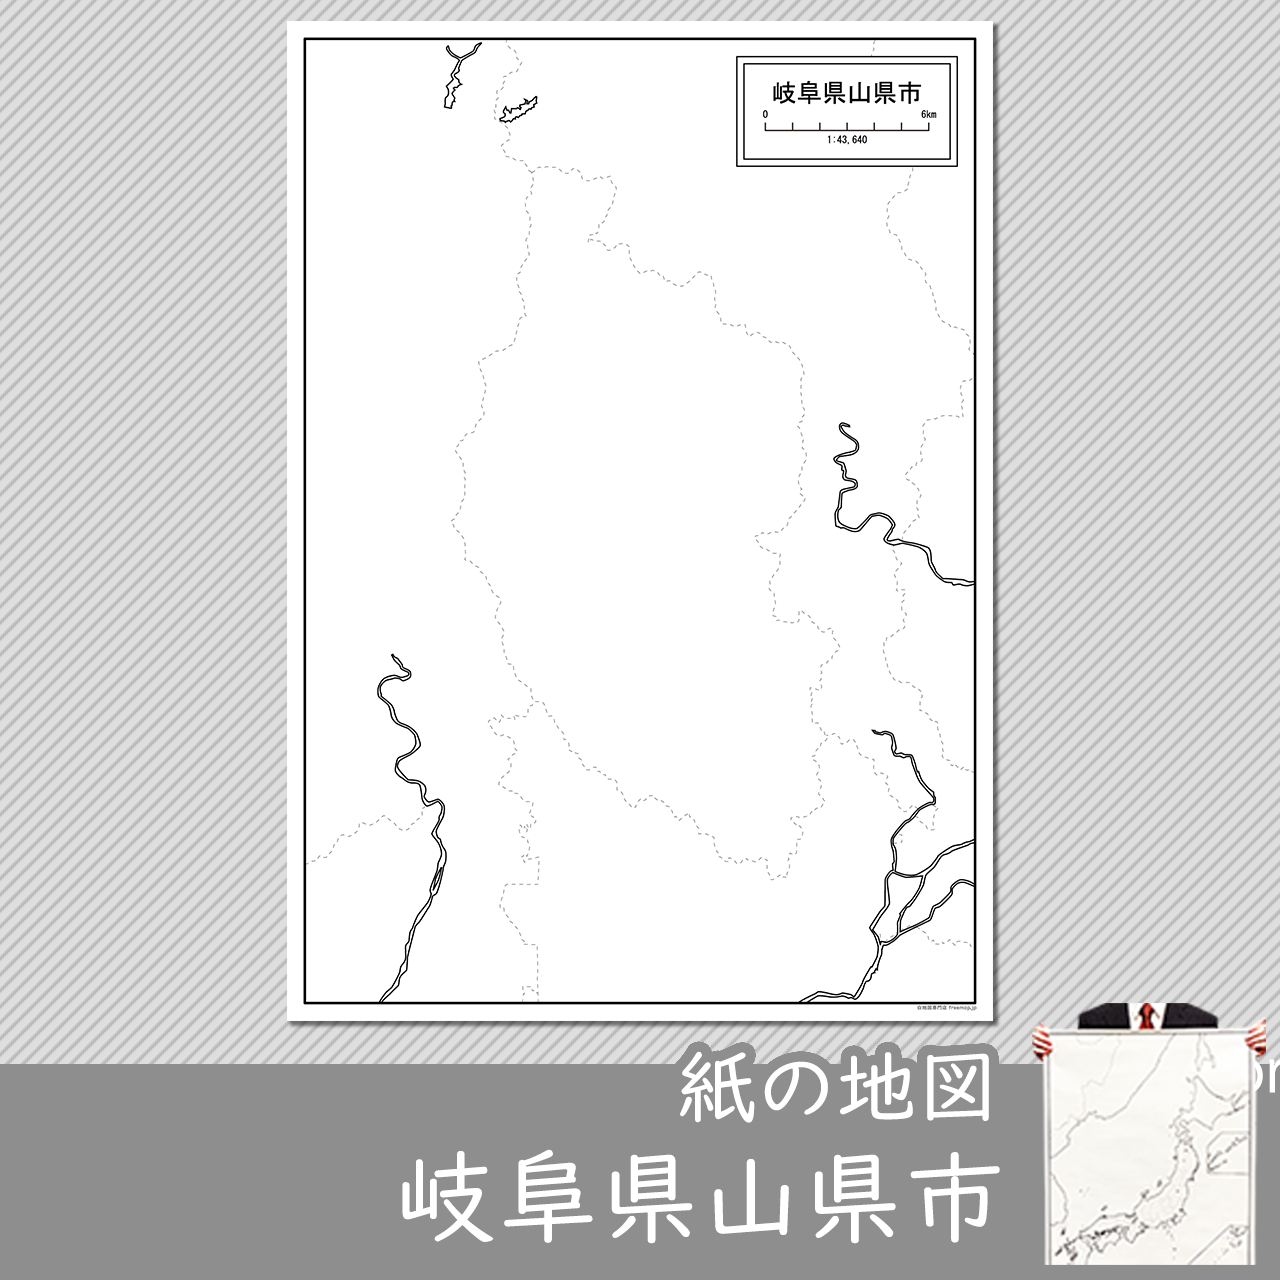 山県市の紙の白地図のサムネイル